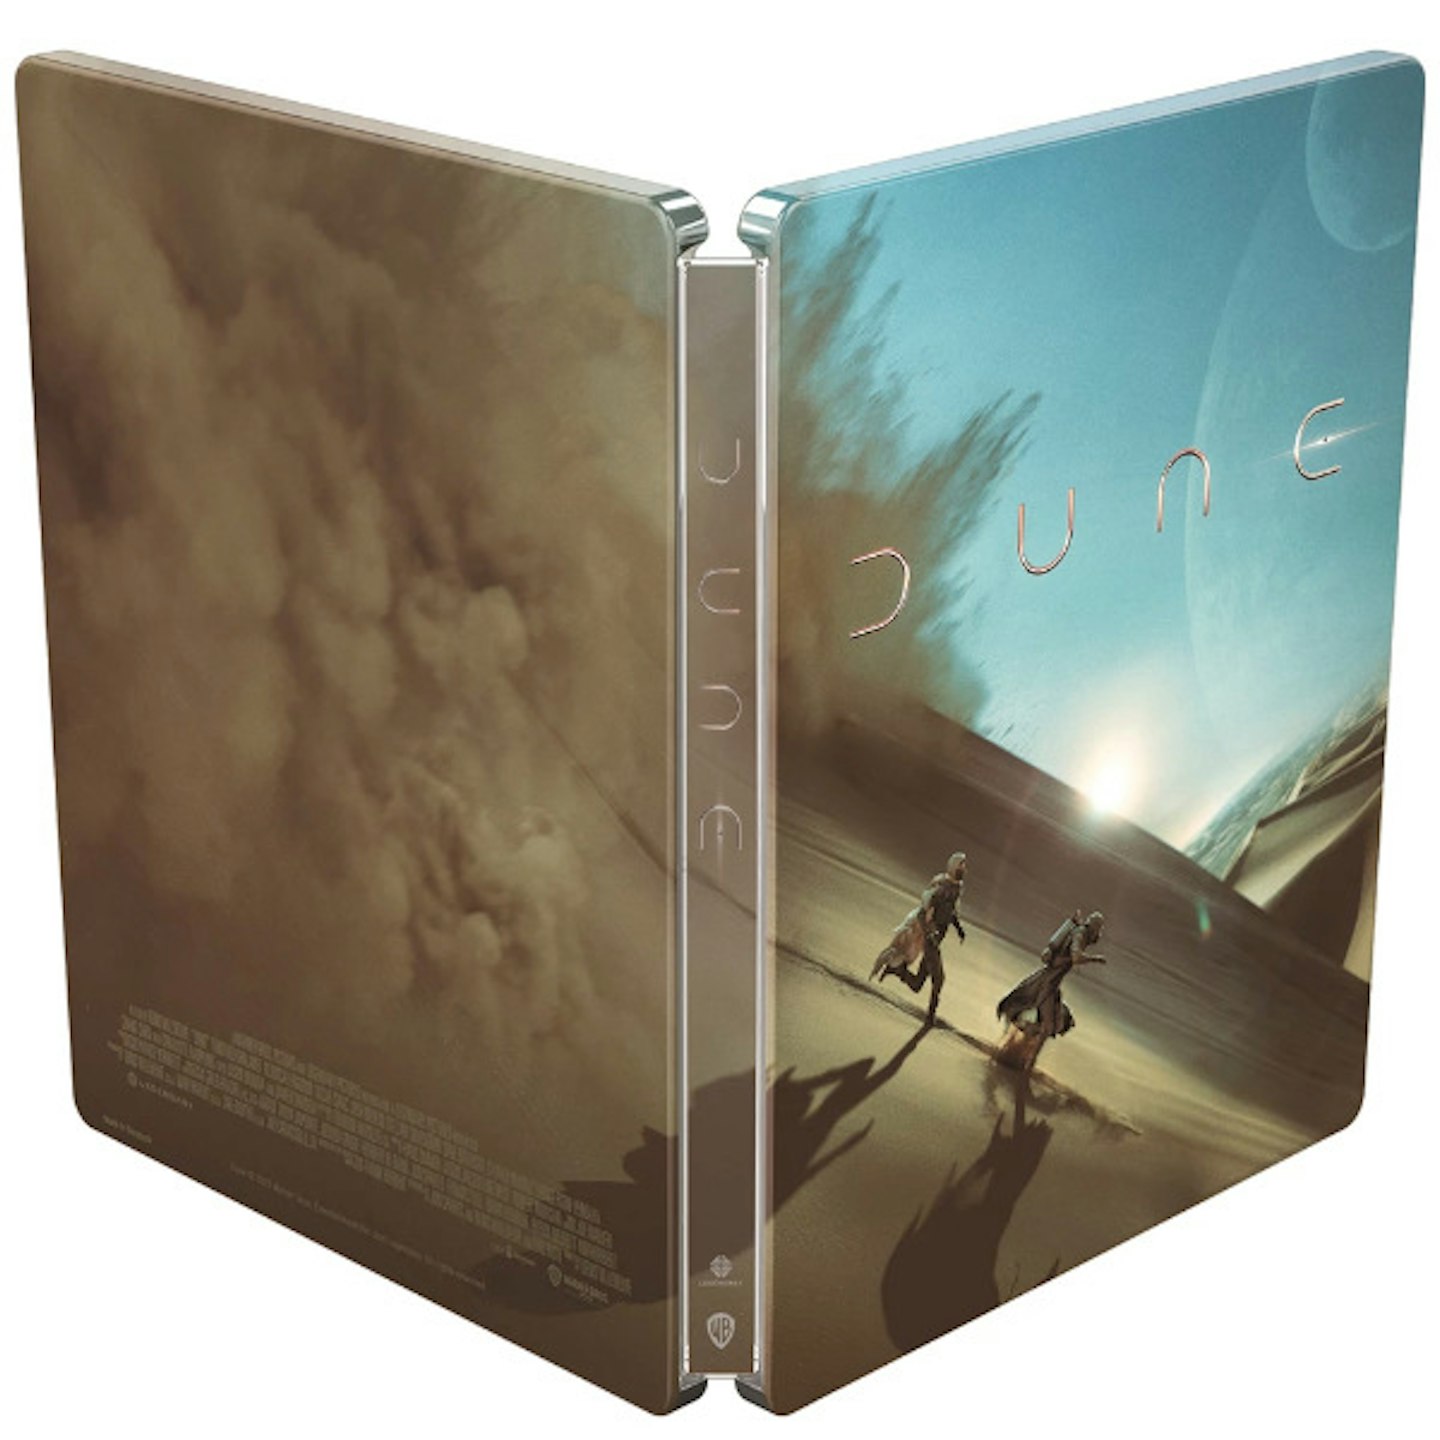 Dune HMV Exclusive Steelbook 4K